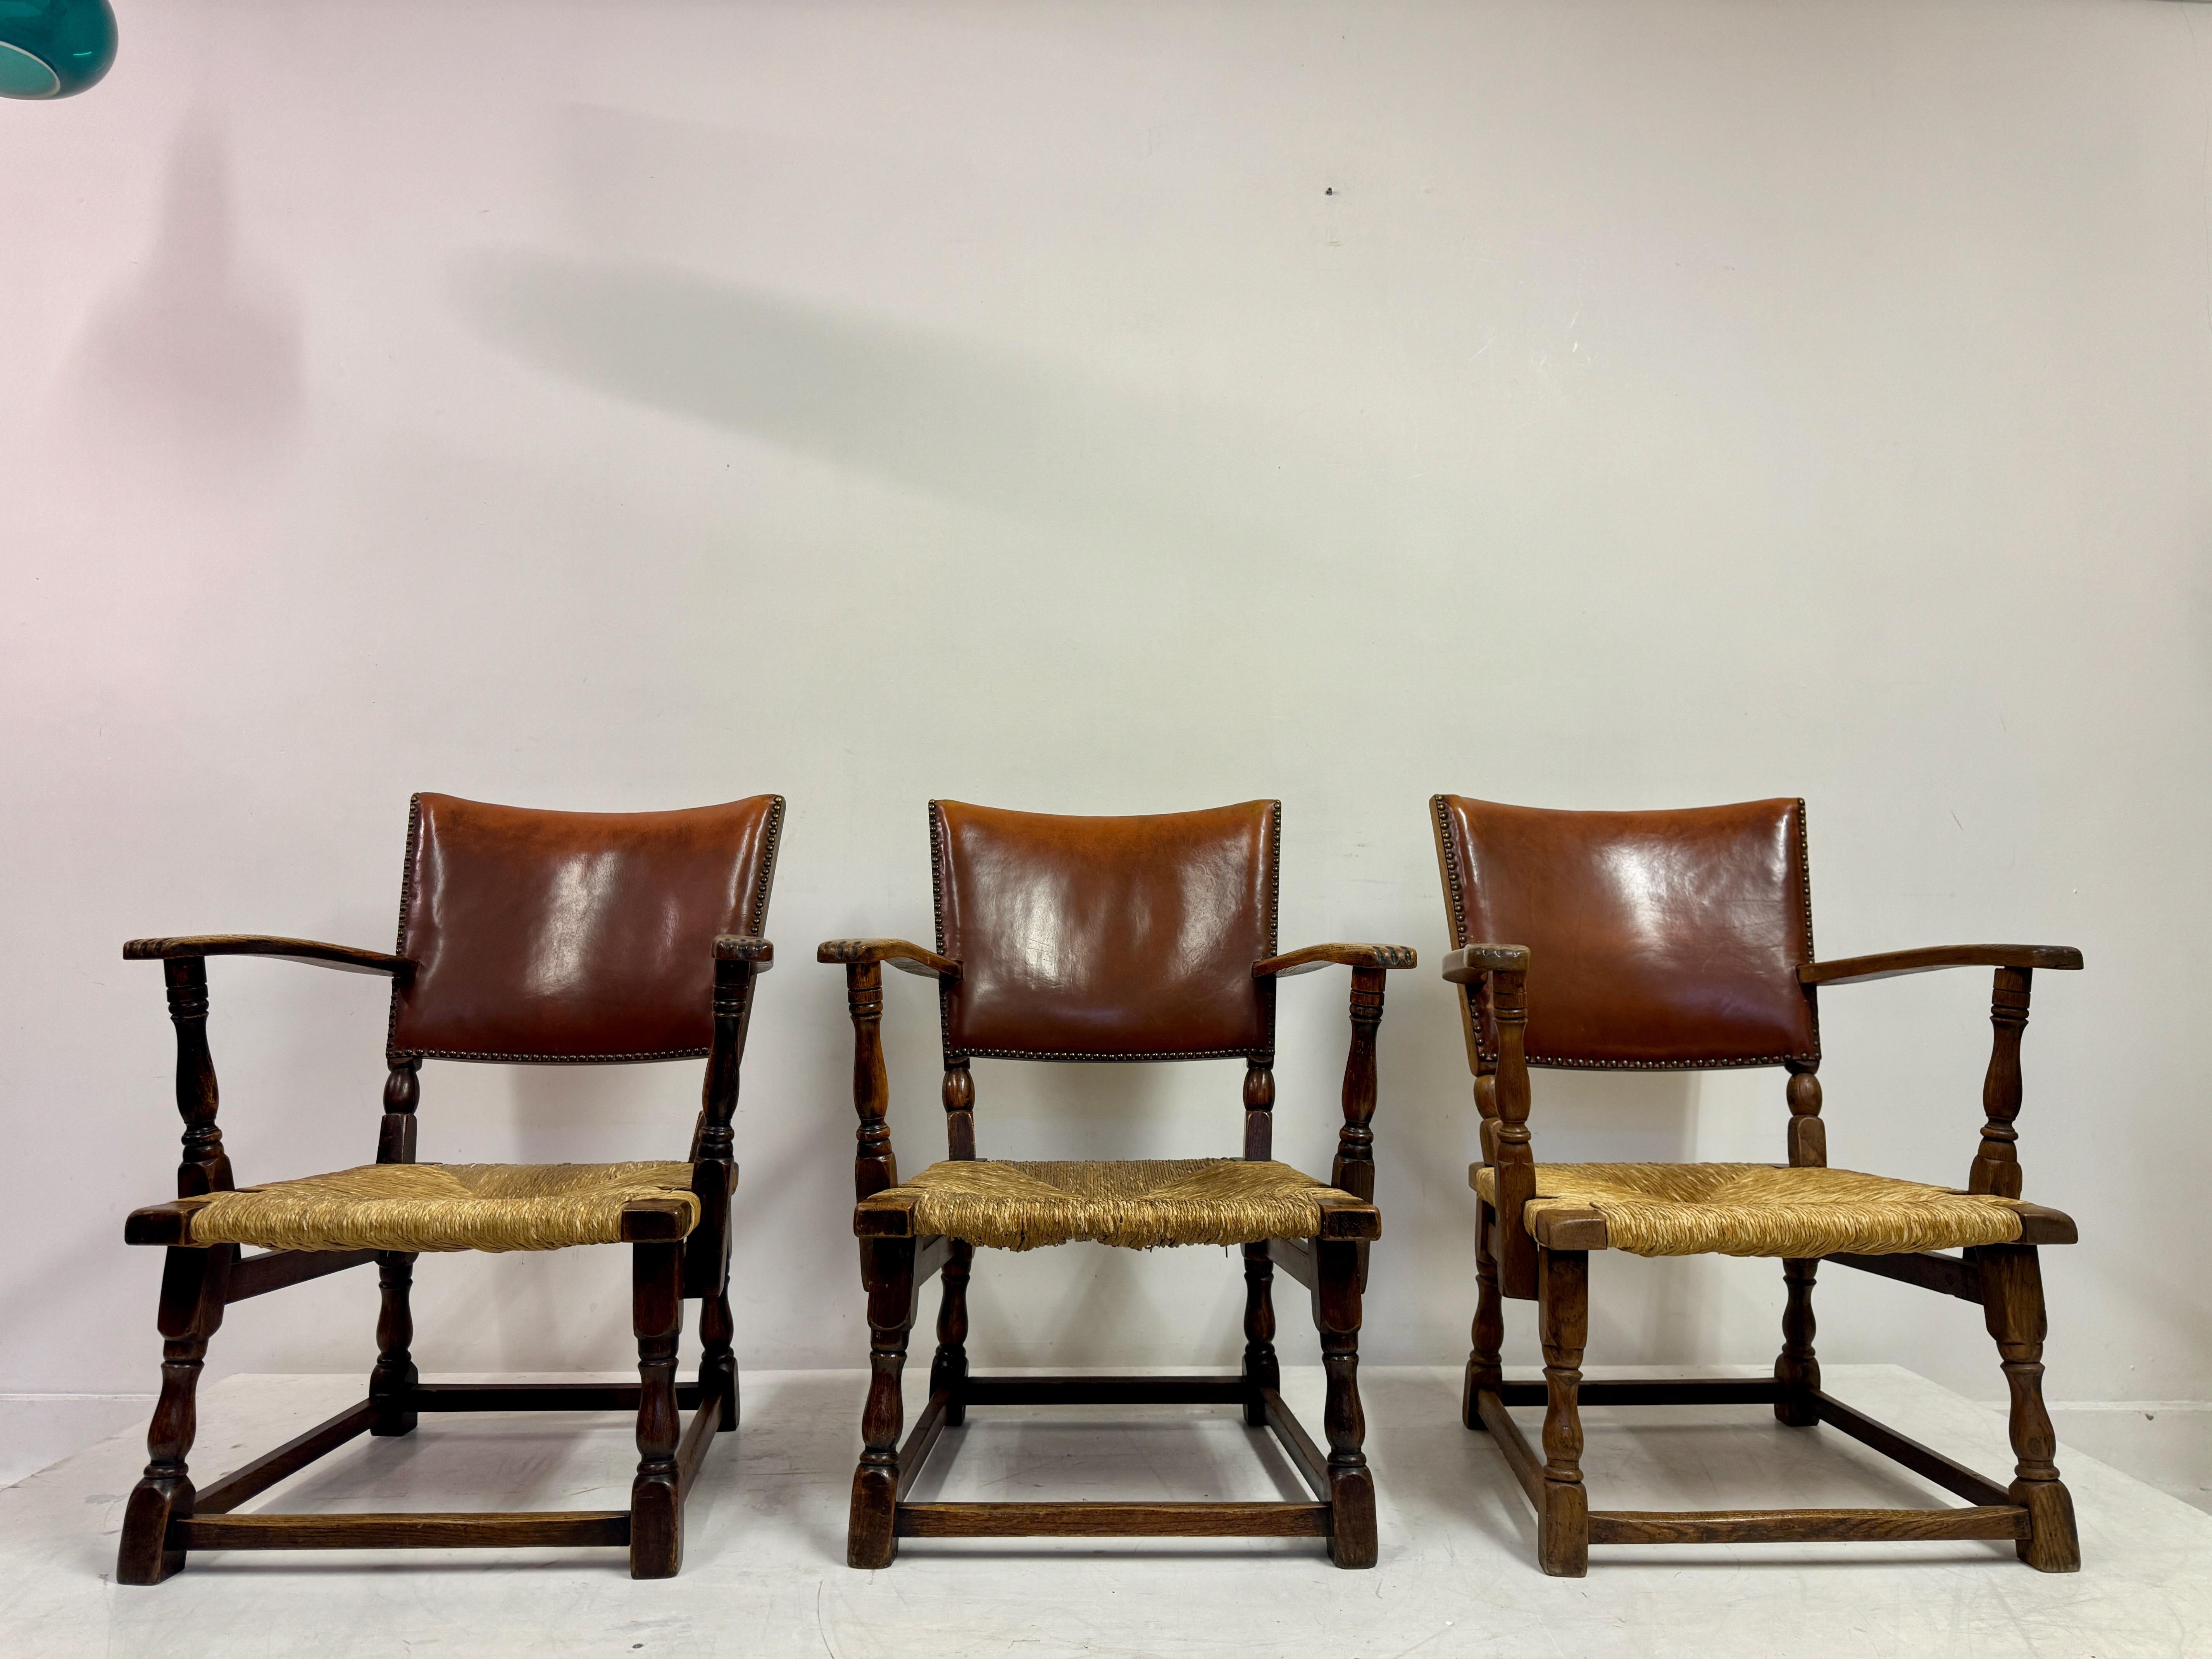 Trois fauteuils

Chêne

Siège en jonc avec dossier en cuir

Hauteur d'assise 36cm

Néerlandais des années 1940